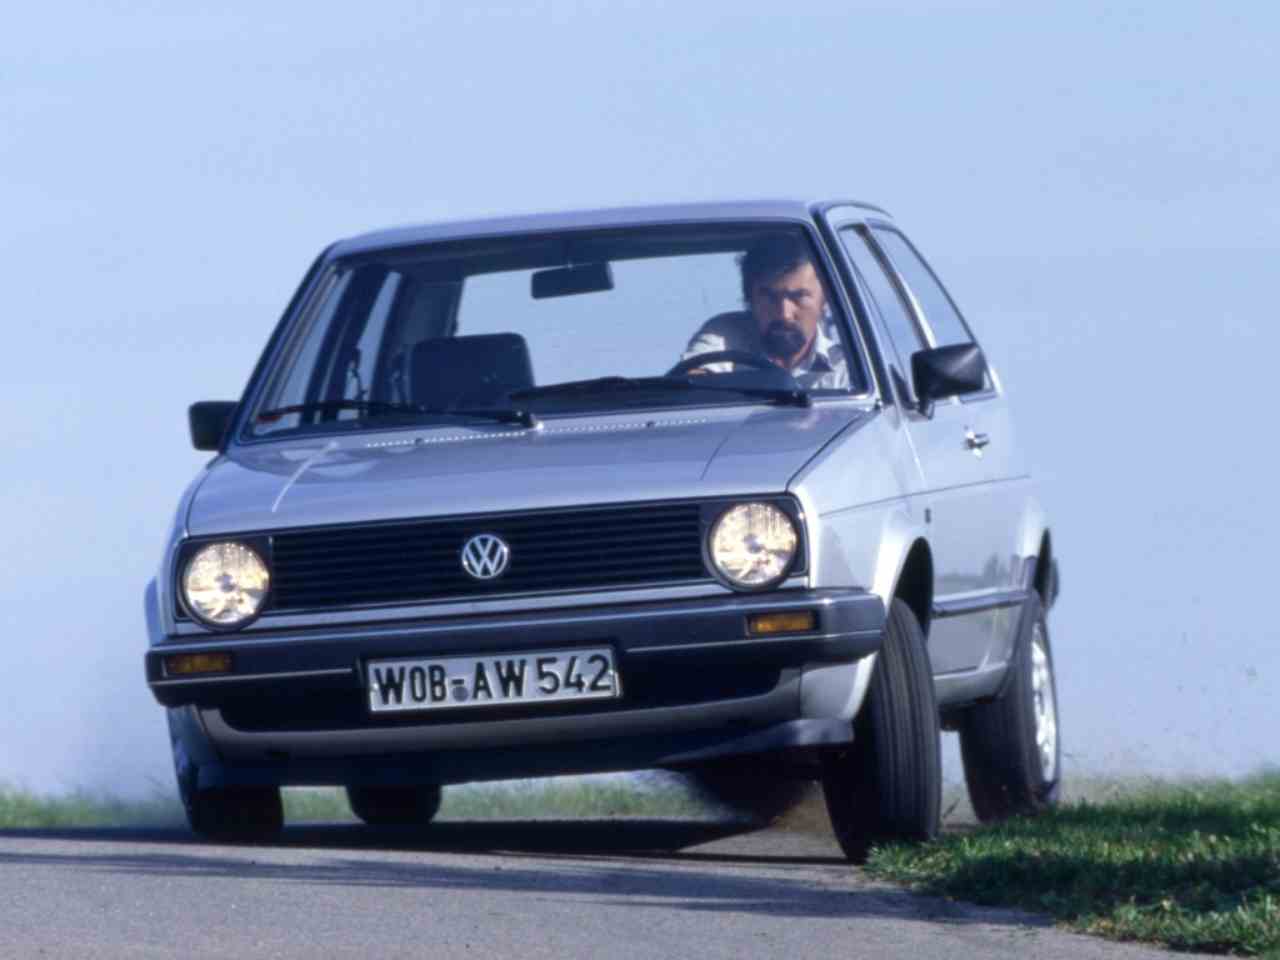 Volkswagen Golf tre porte, seconda generazione (foto Wheelsage)